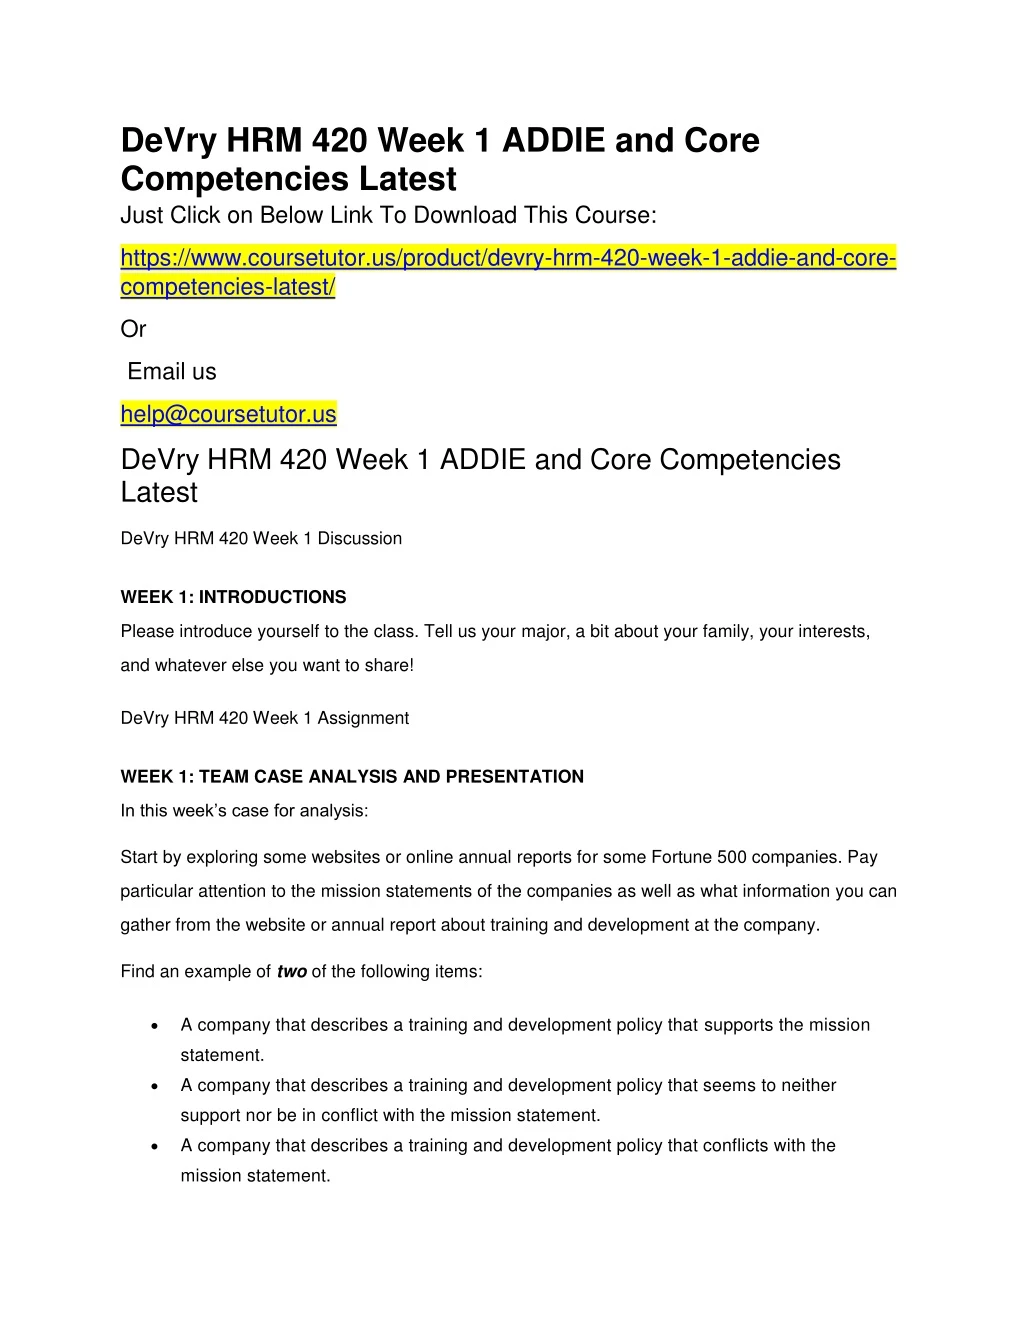 devry hrm 420 week 1 addie and core competencies